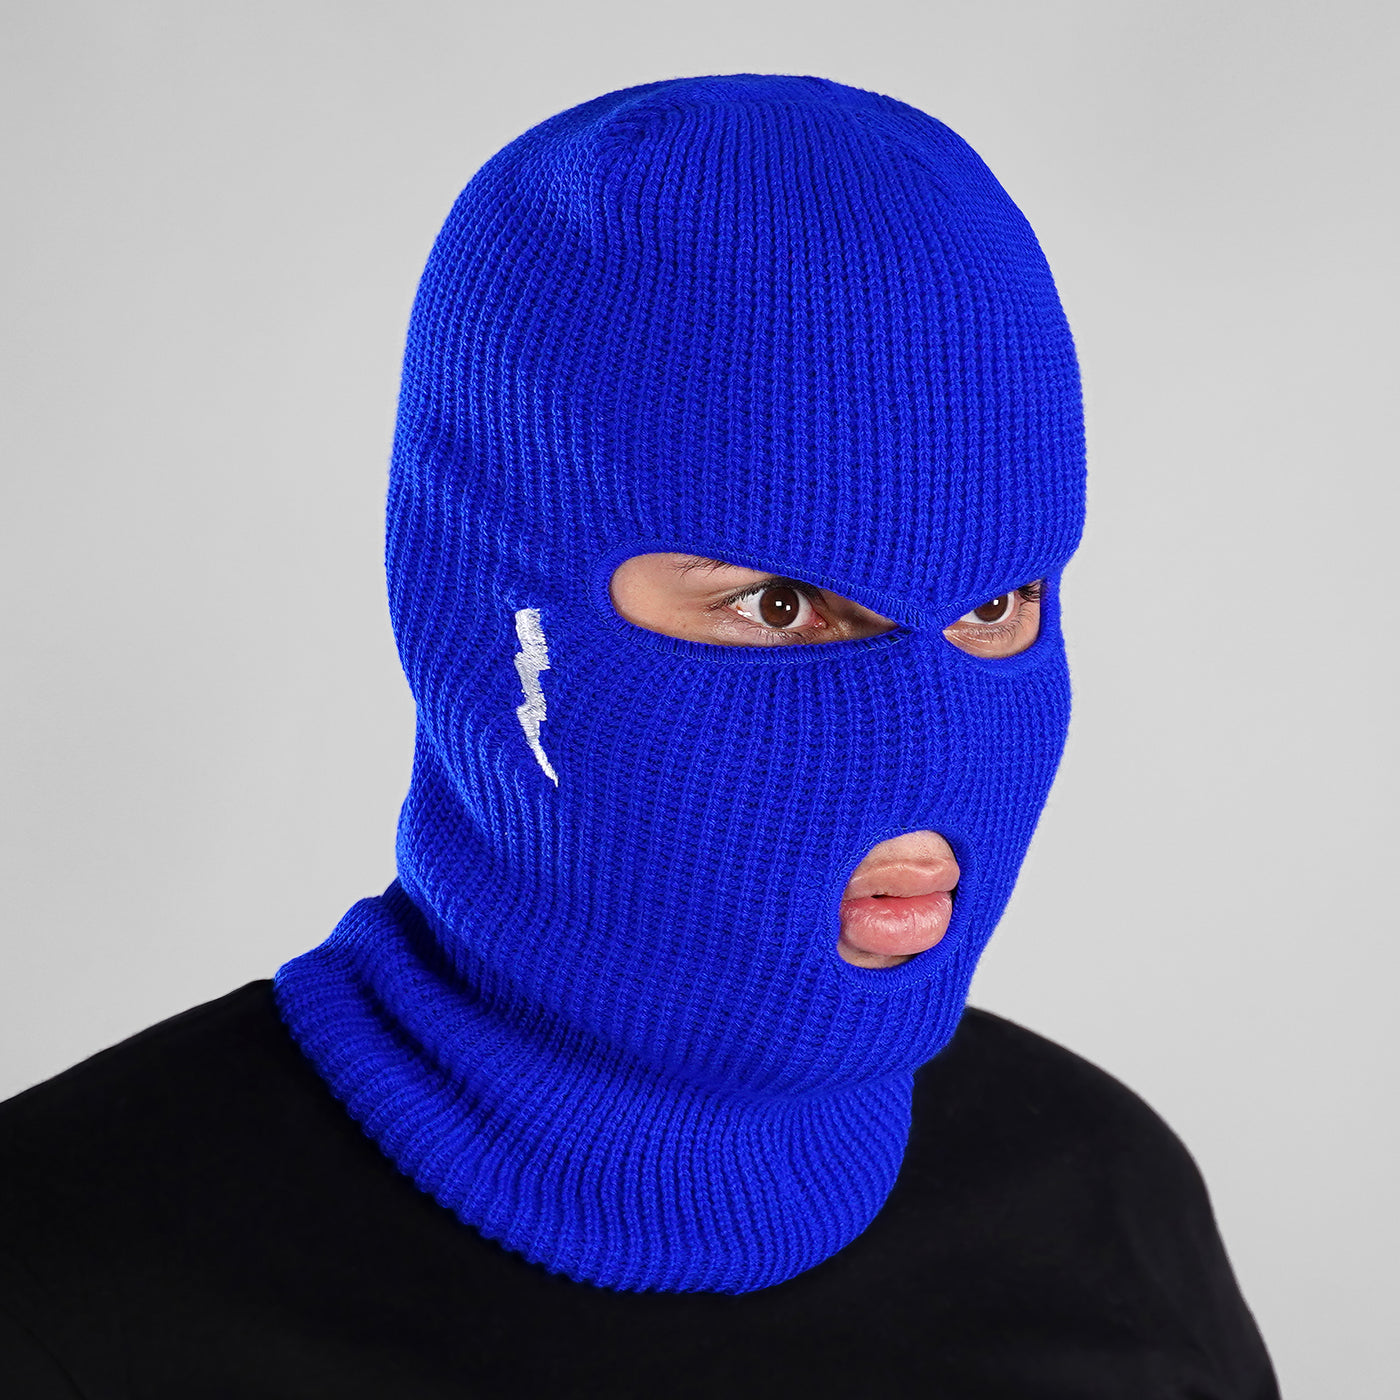 Trueno Blue Ski Mask